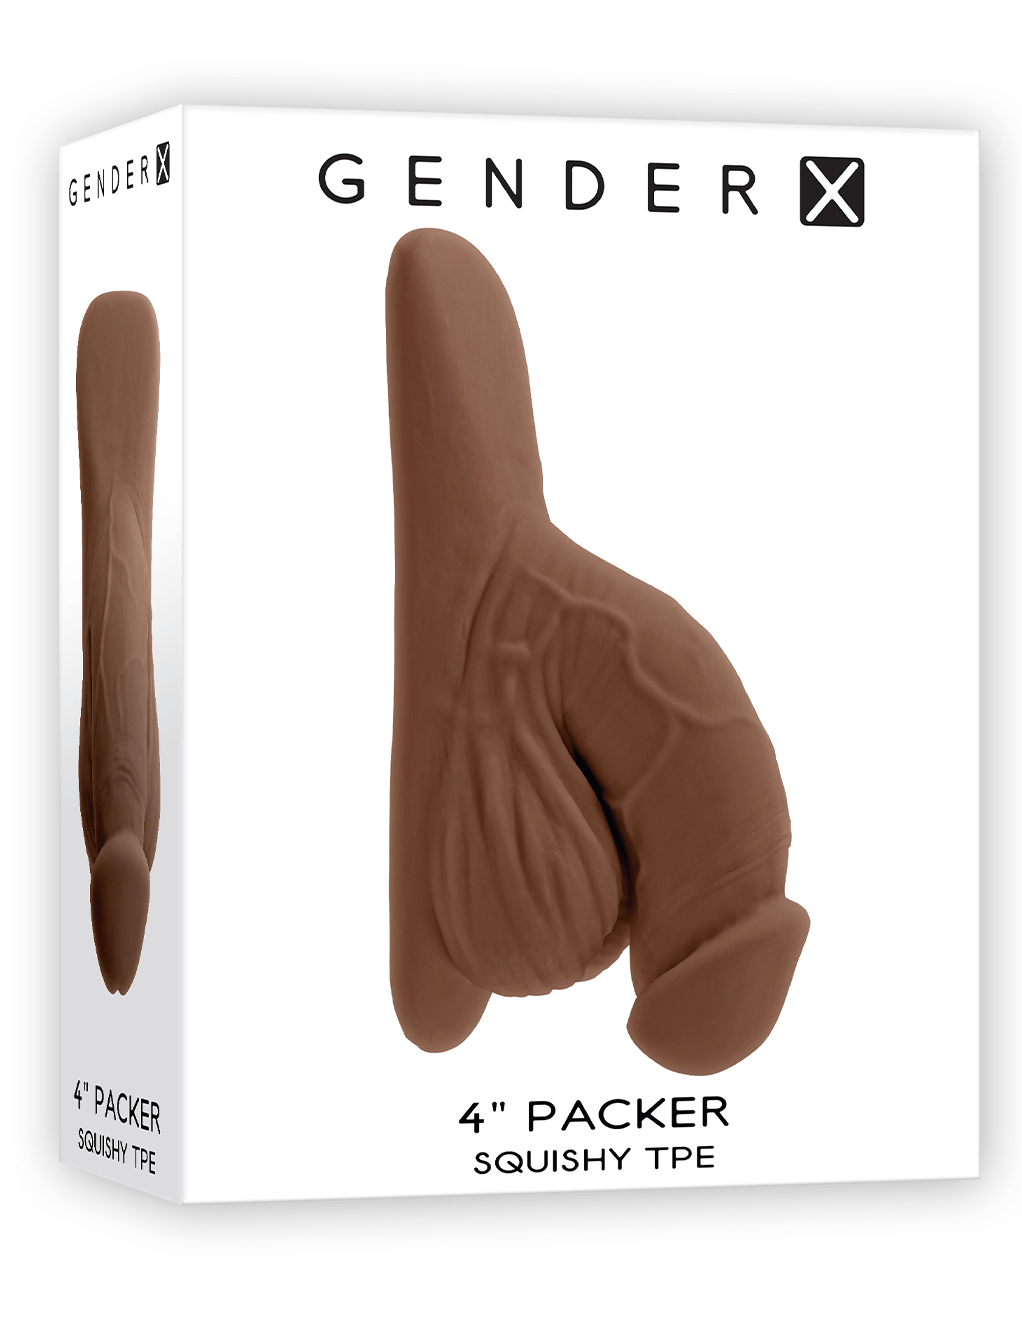 Gender X 4" Packer - Chocolate - Box